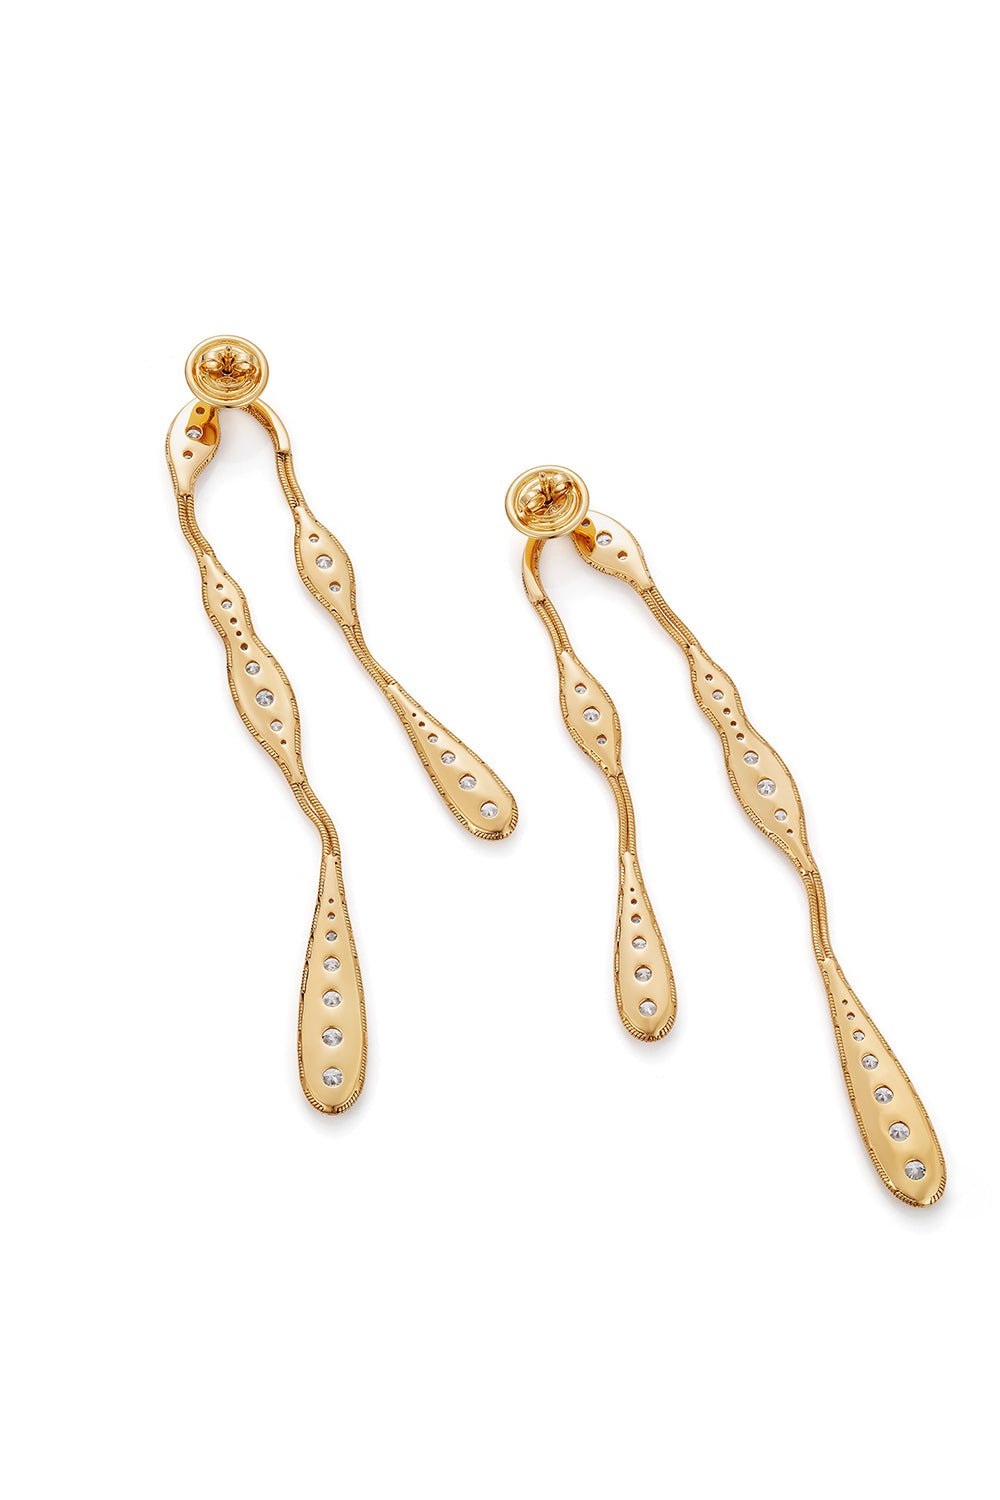 FERNANDO JORGE-Fluid Diamond Earrings-YELLOW GOLD